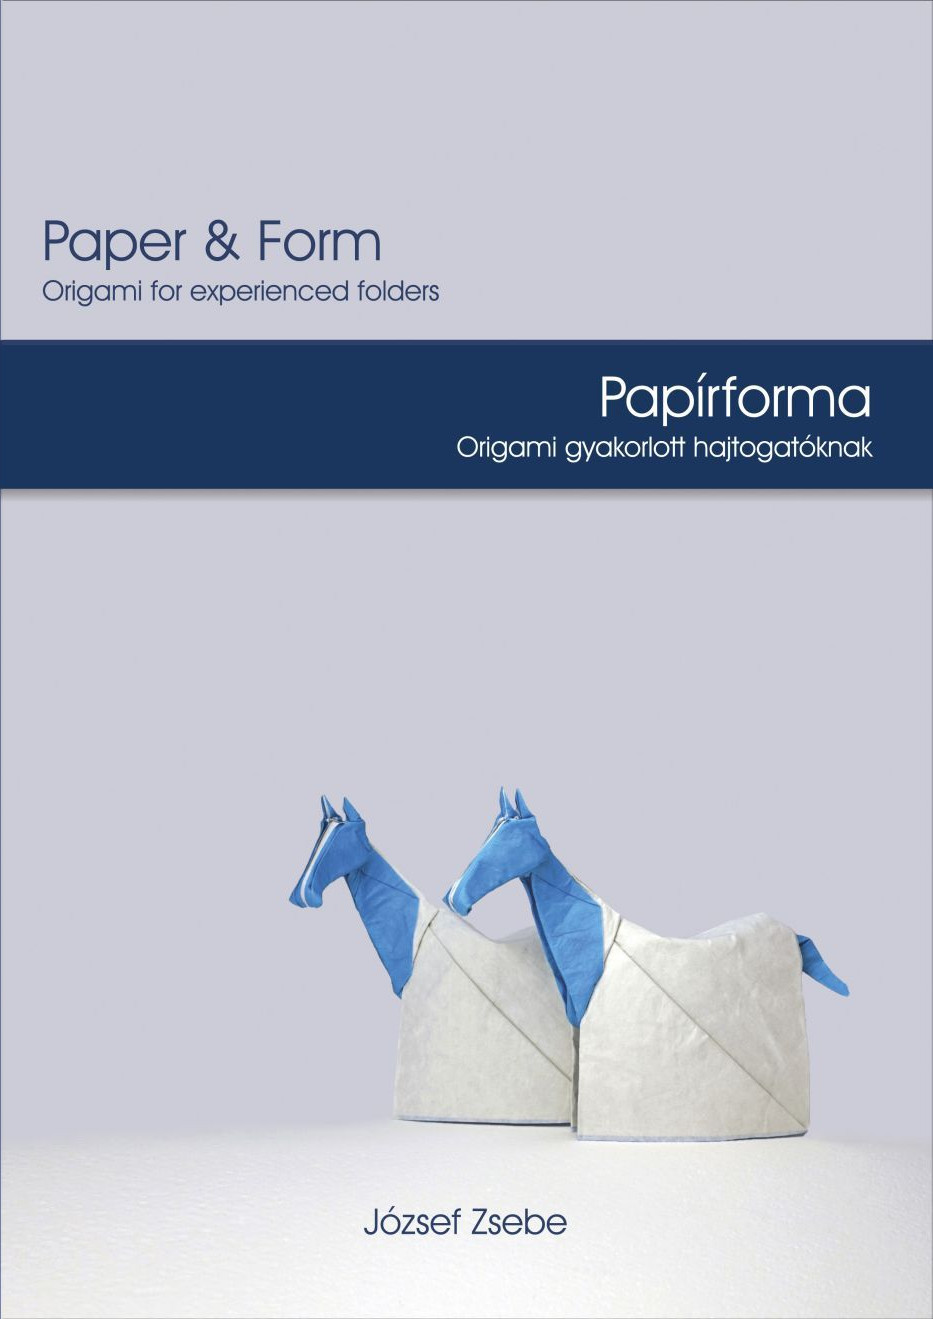 Paper & Form - Papírforma : page 20.